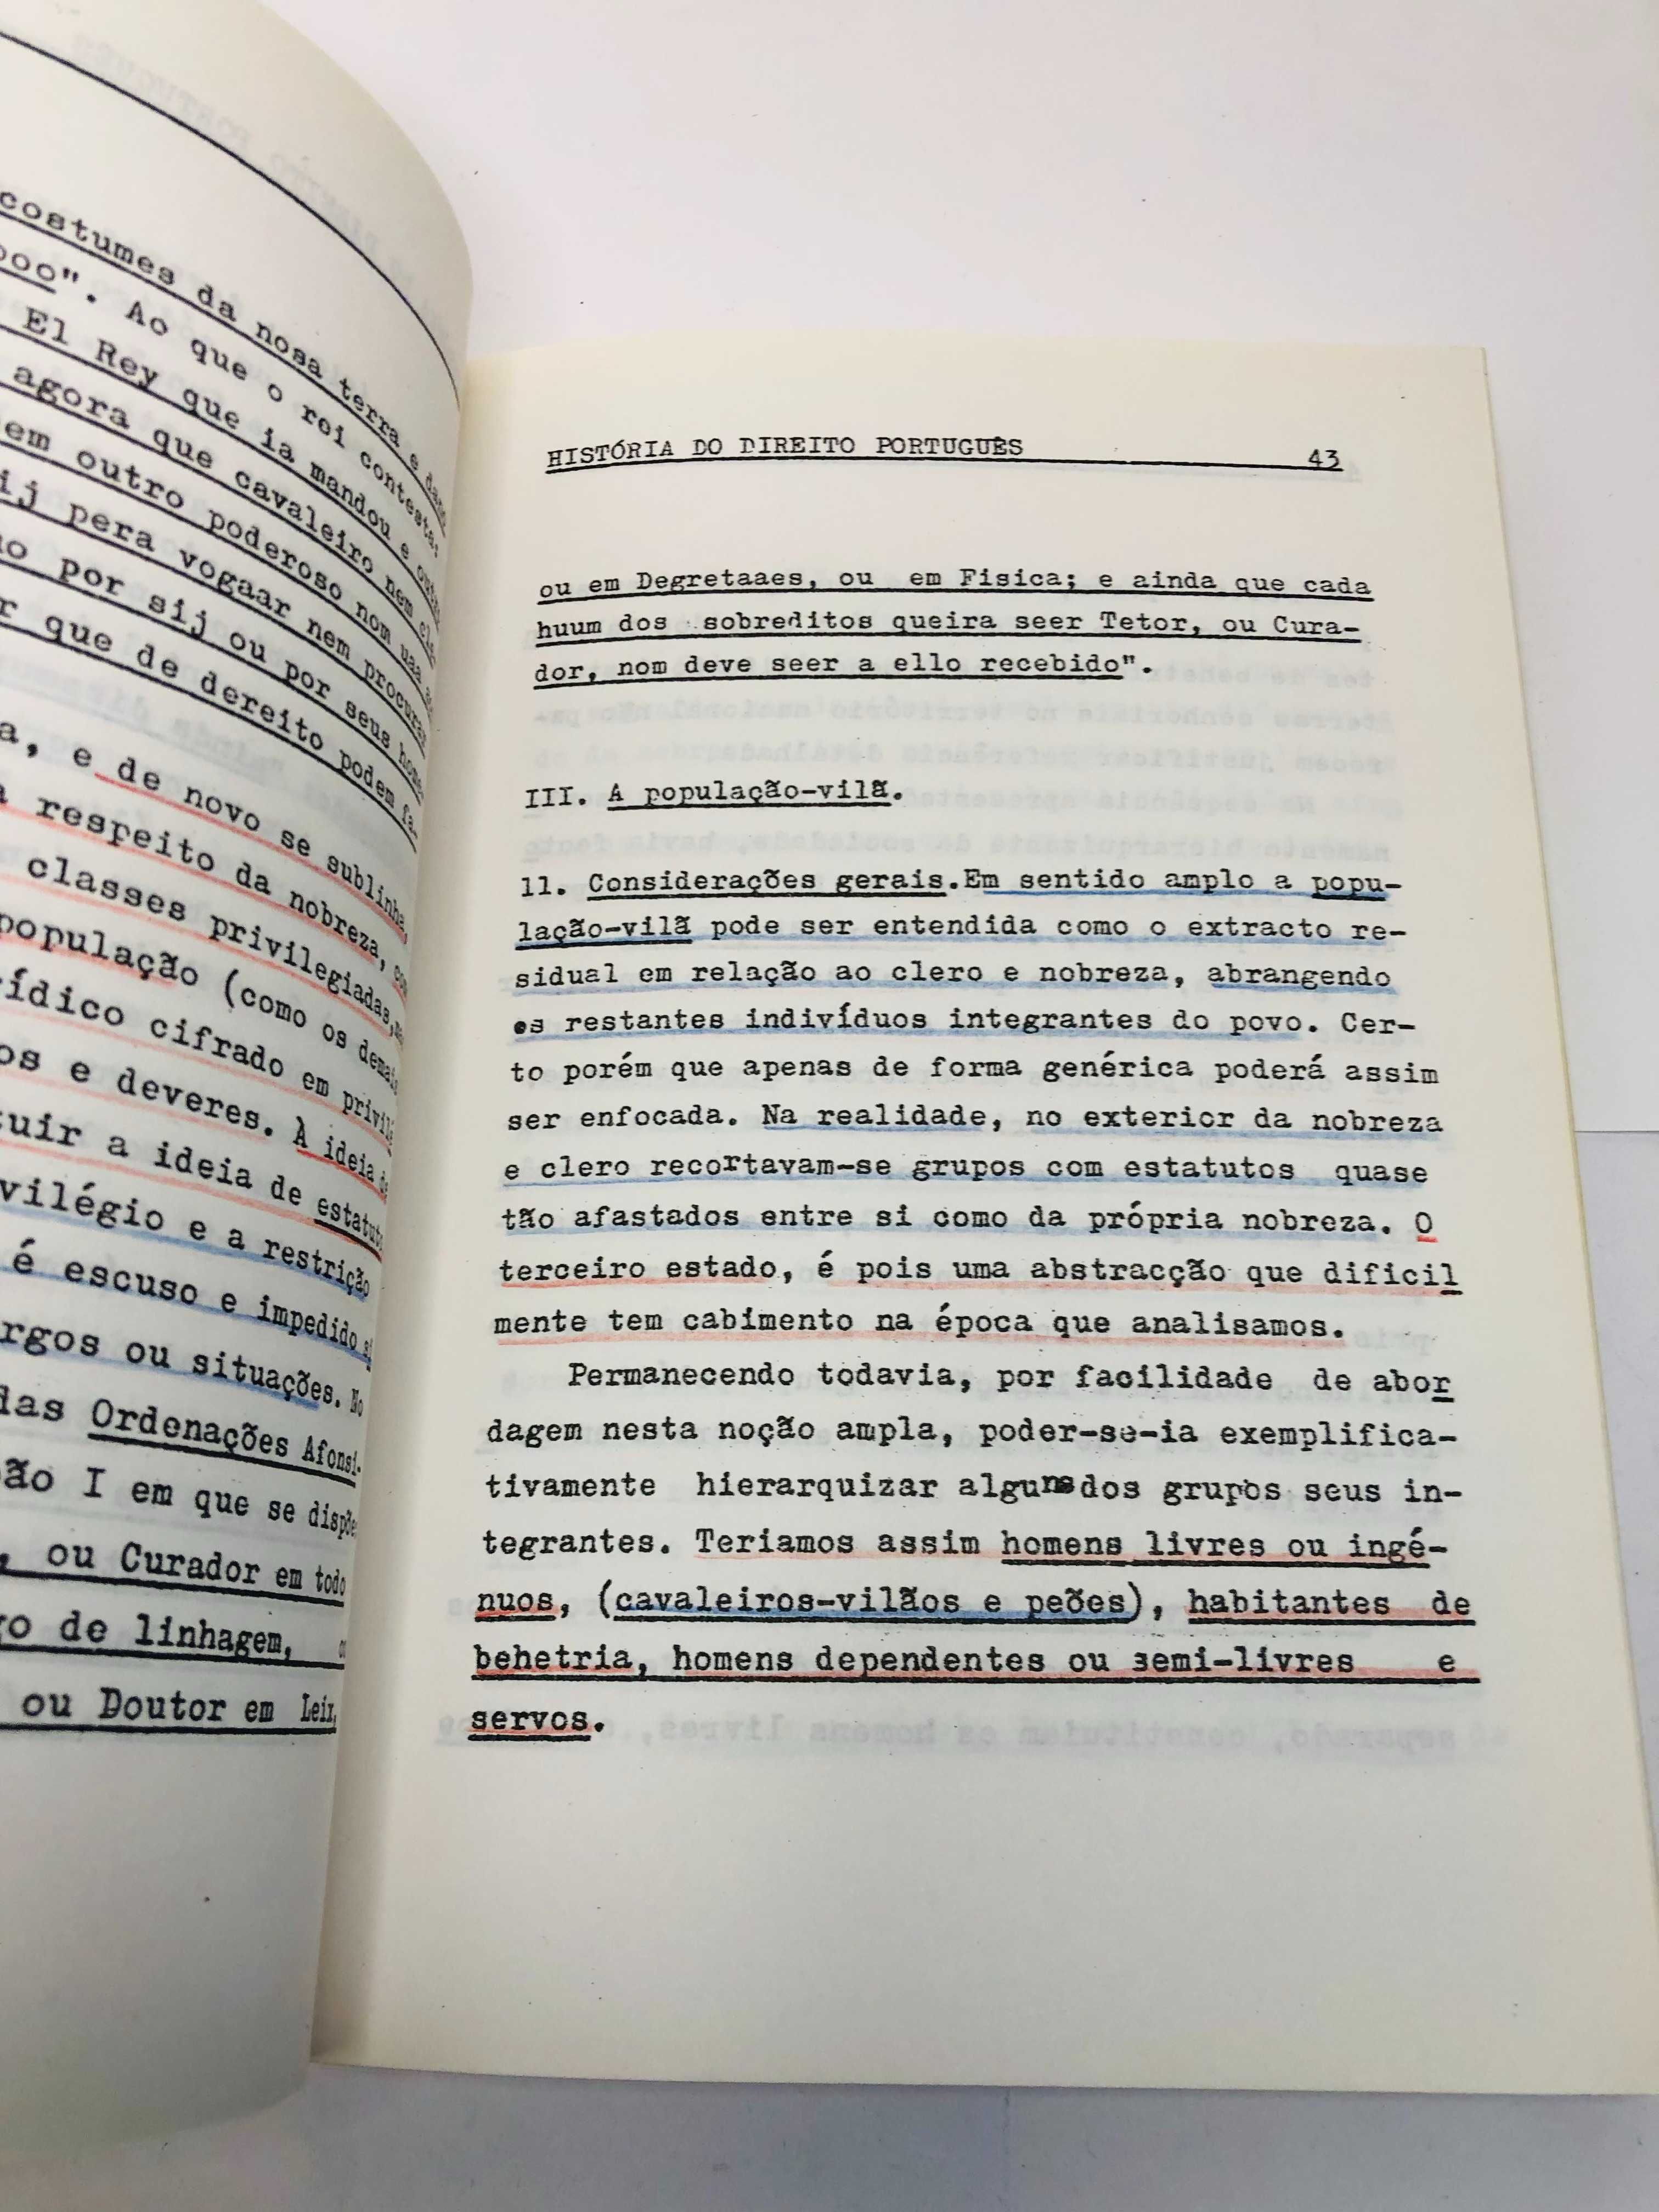 História do Direito Português (Volume I - Tomo II)